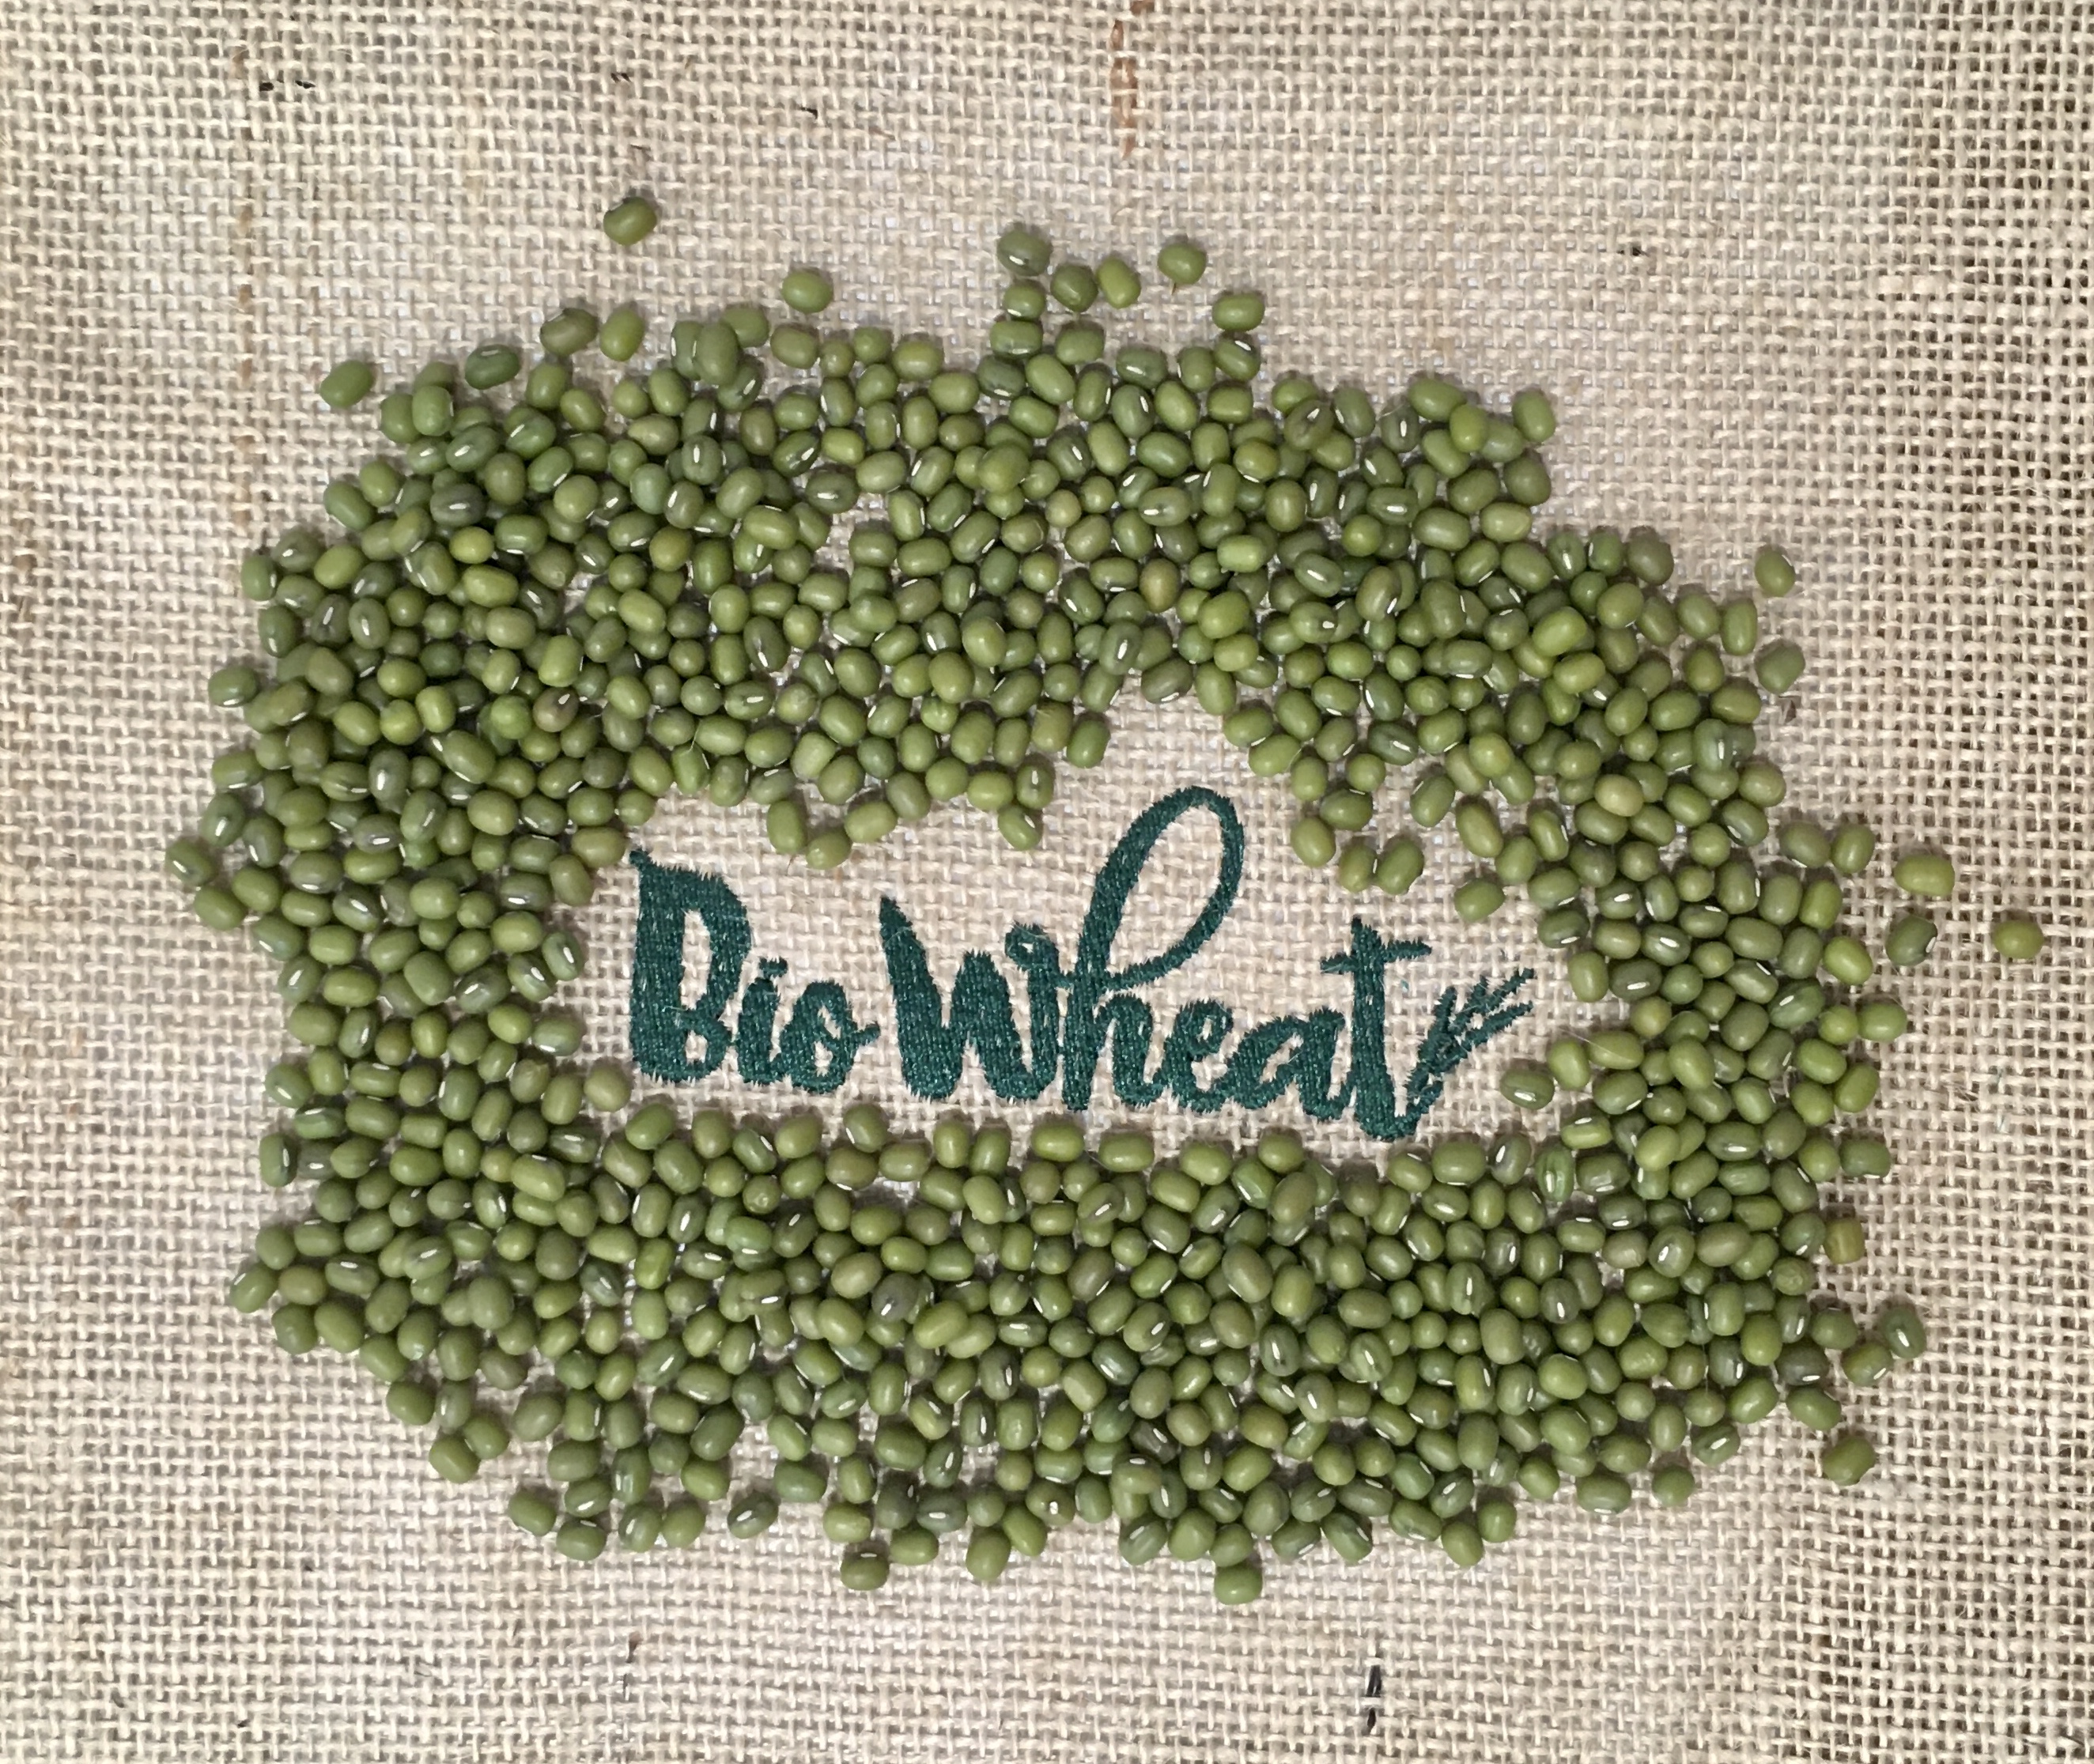 Semillas de Judía Mungo ecológicas para germinar - Biowheat - Jugo de  Hierba de Trigo - Tienda online